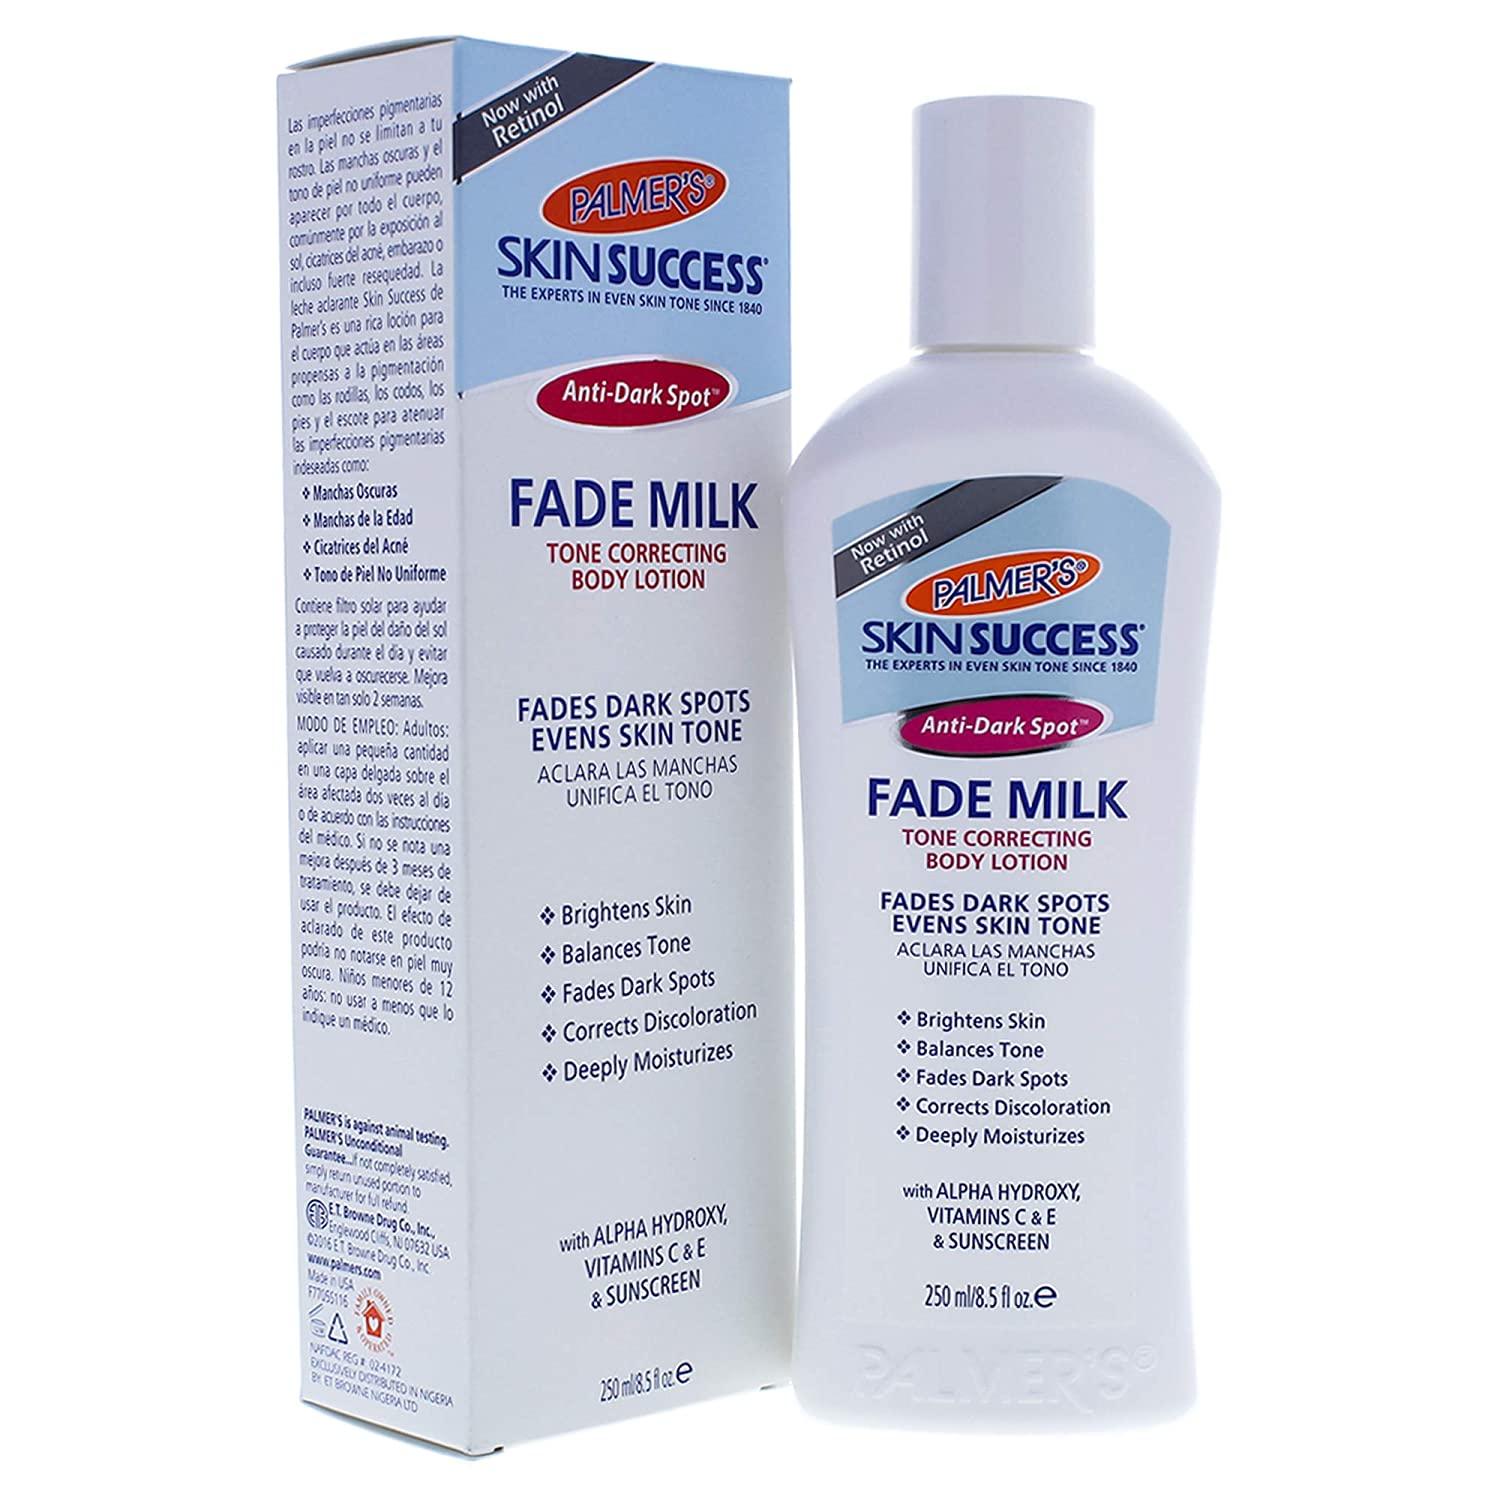 Skin Success Eventone Fade Milk with Vitamin E and Alpha Hydroxy